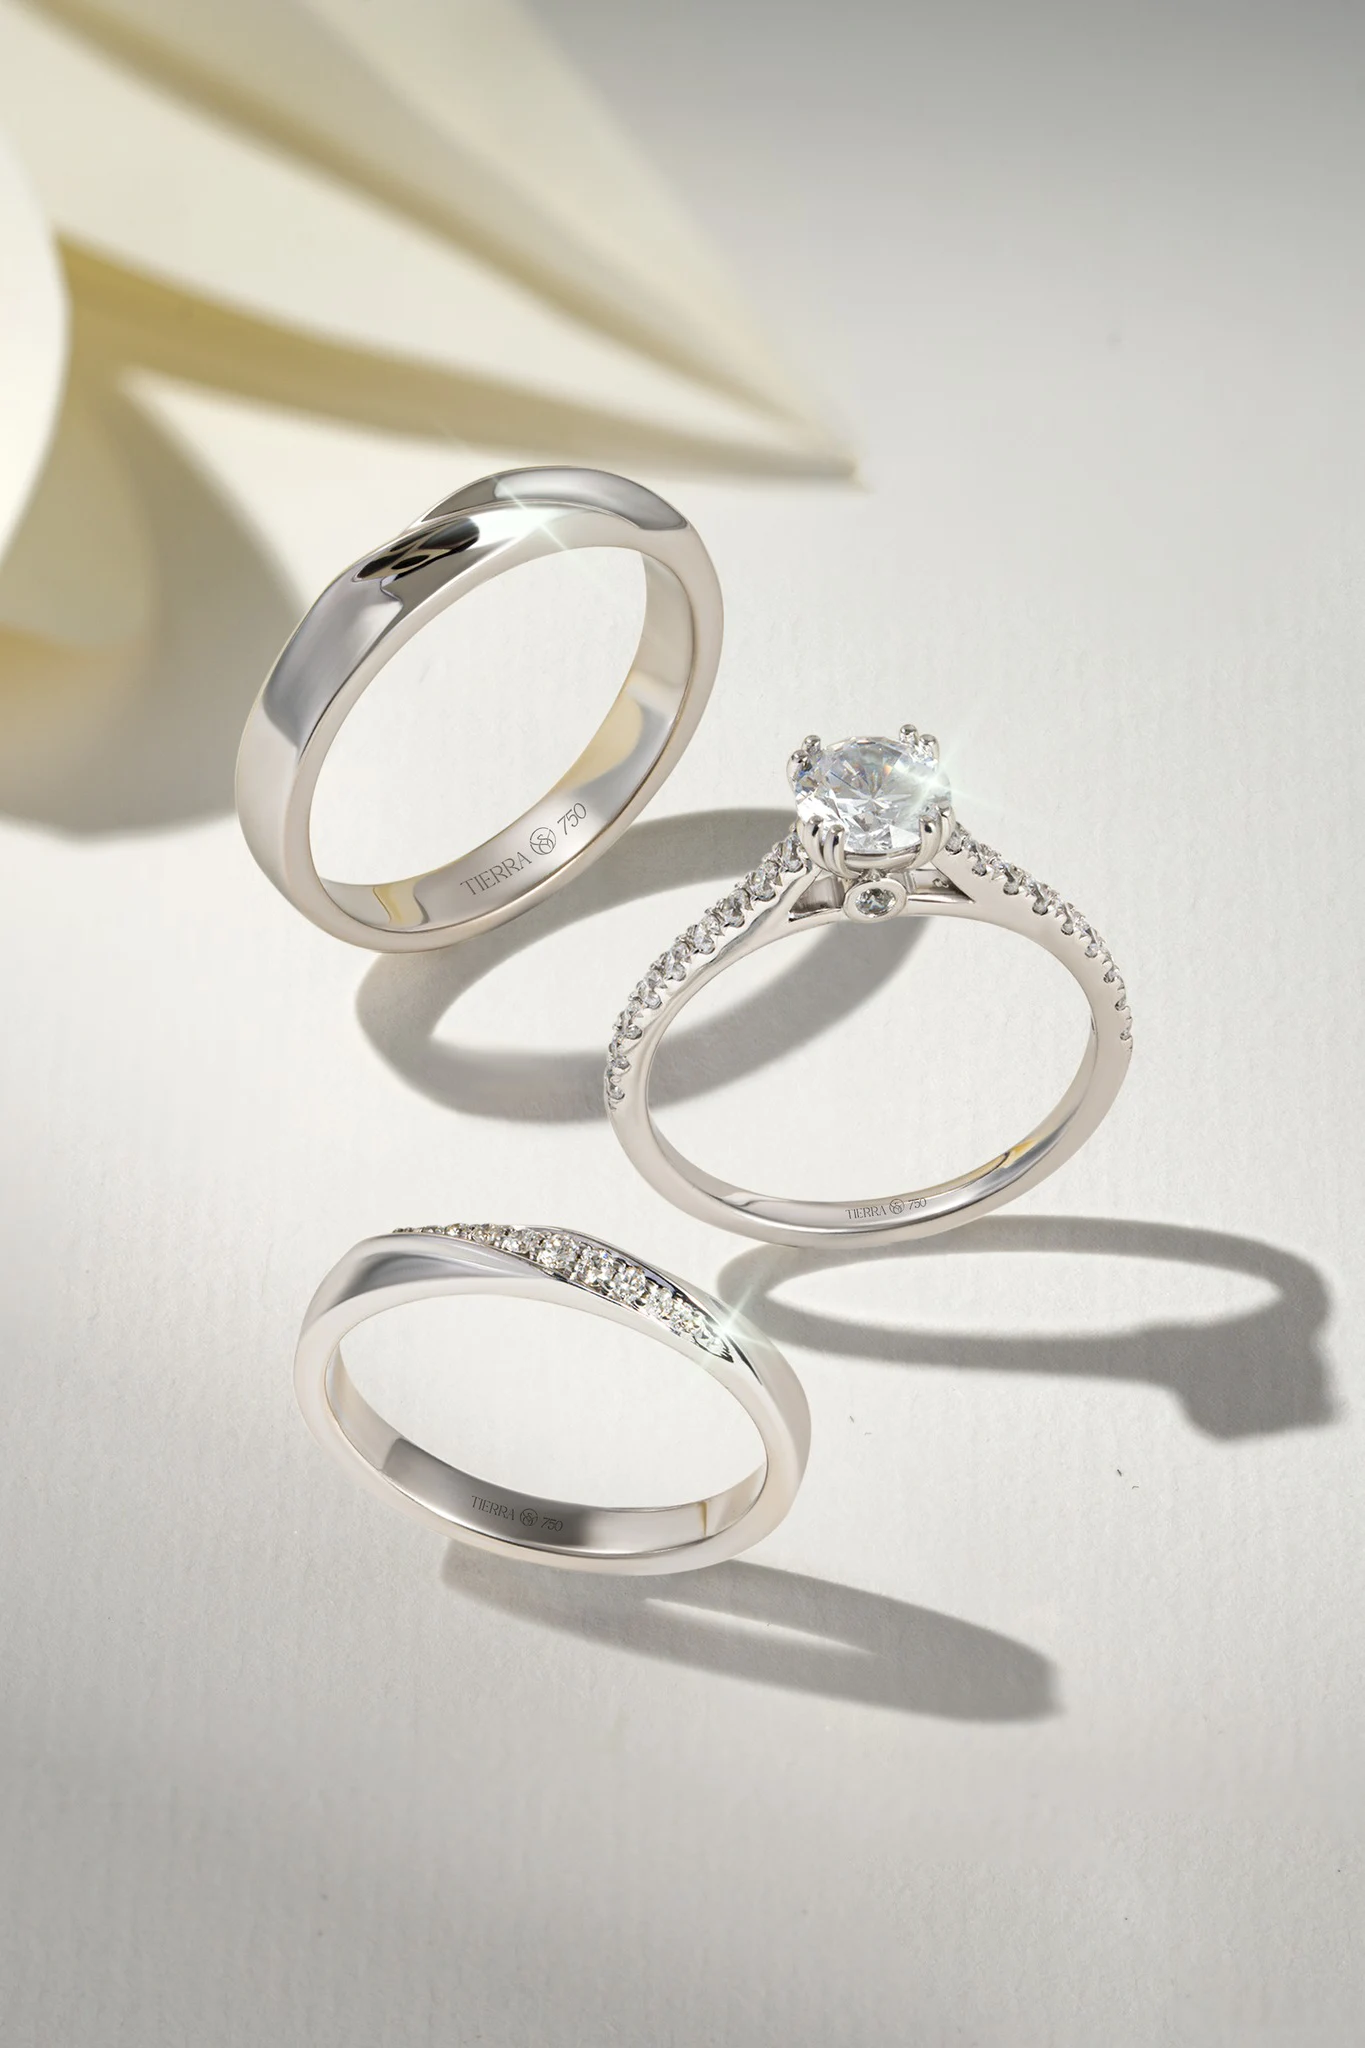 Cách chọn nhẫn vàng trắng nữ đẹp - Đâu là tiêu chí quan trọng nhất?